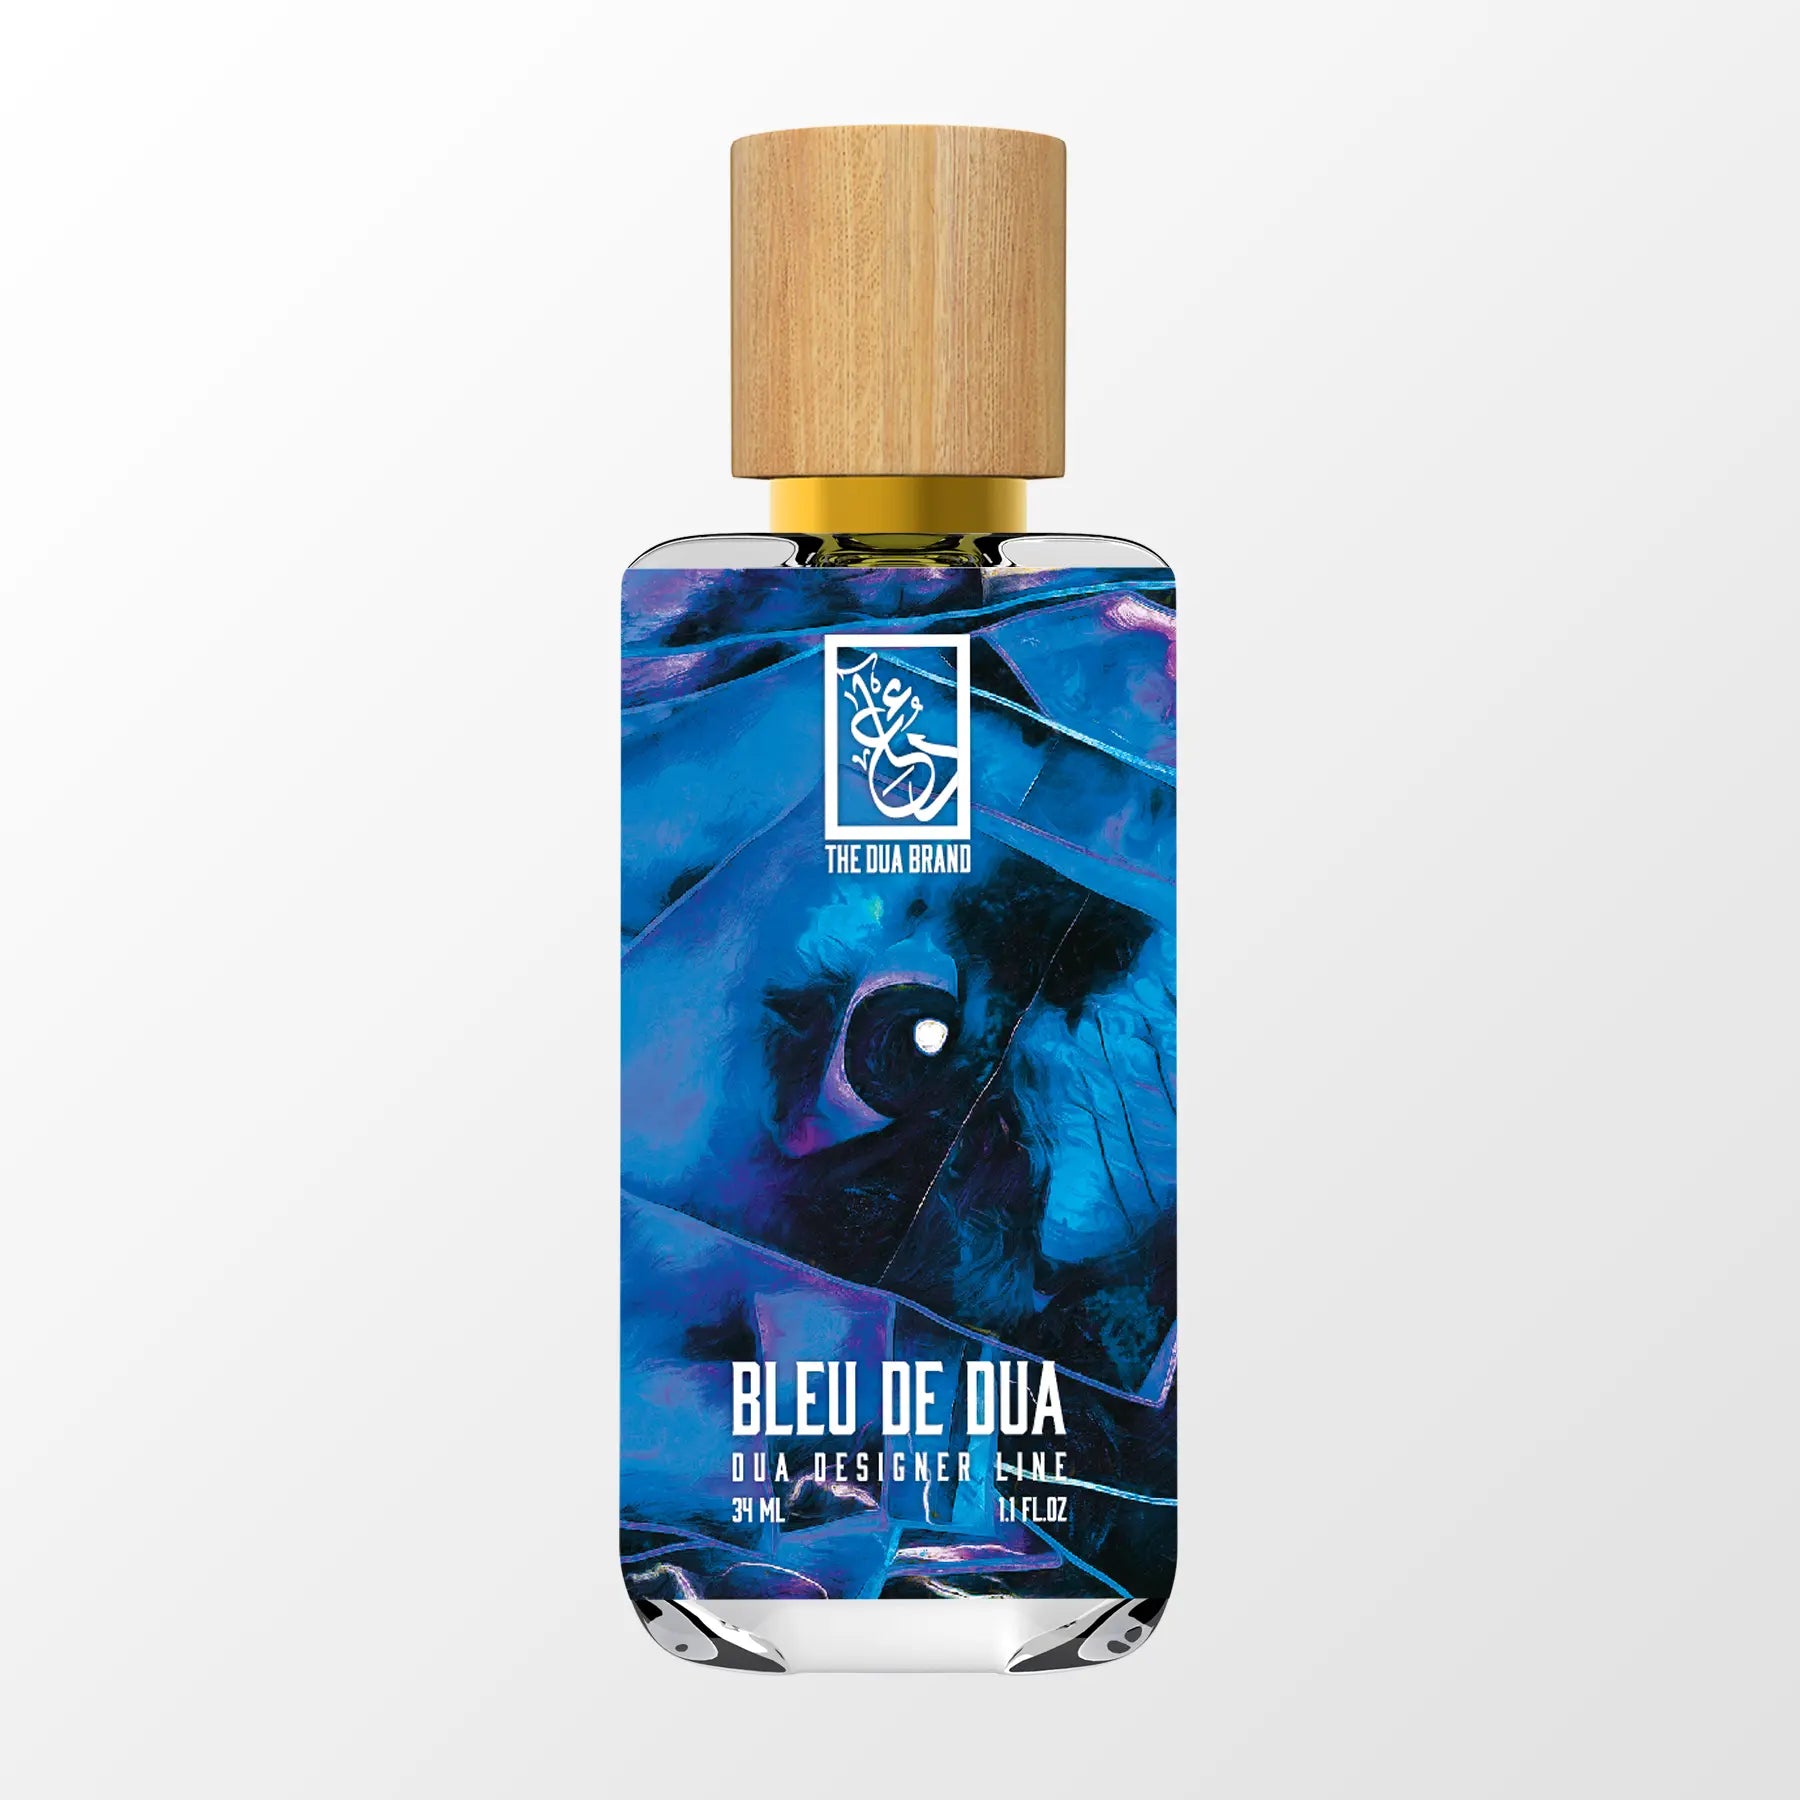 bleu chanel perfume